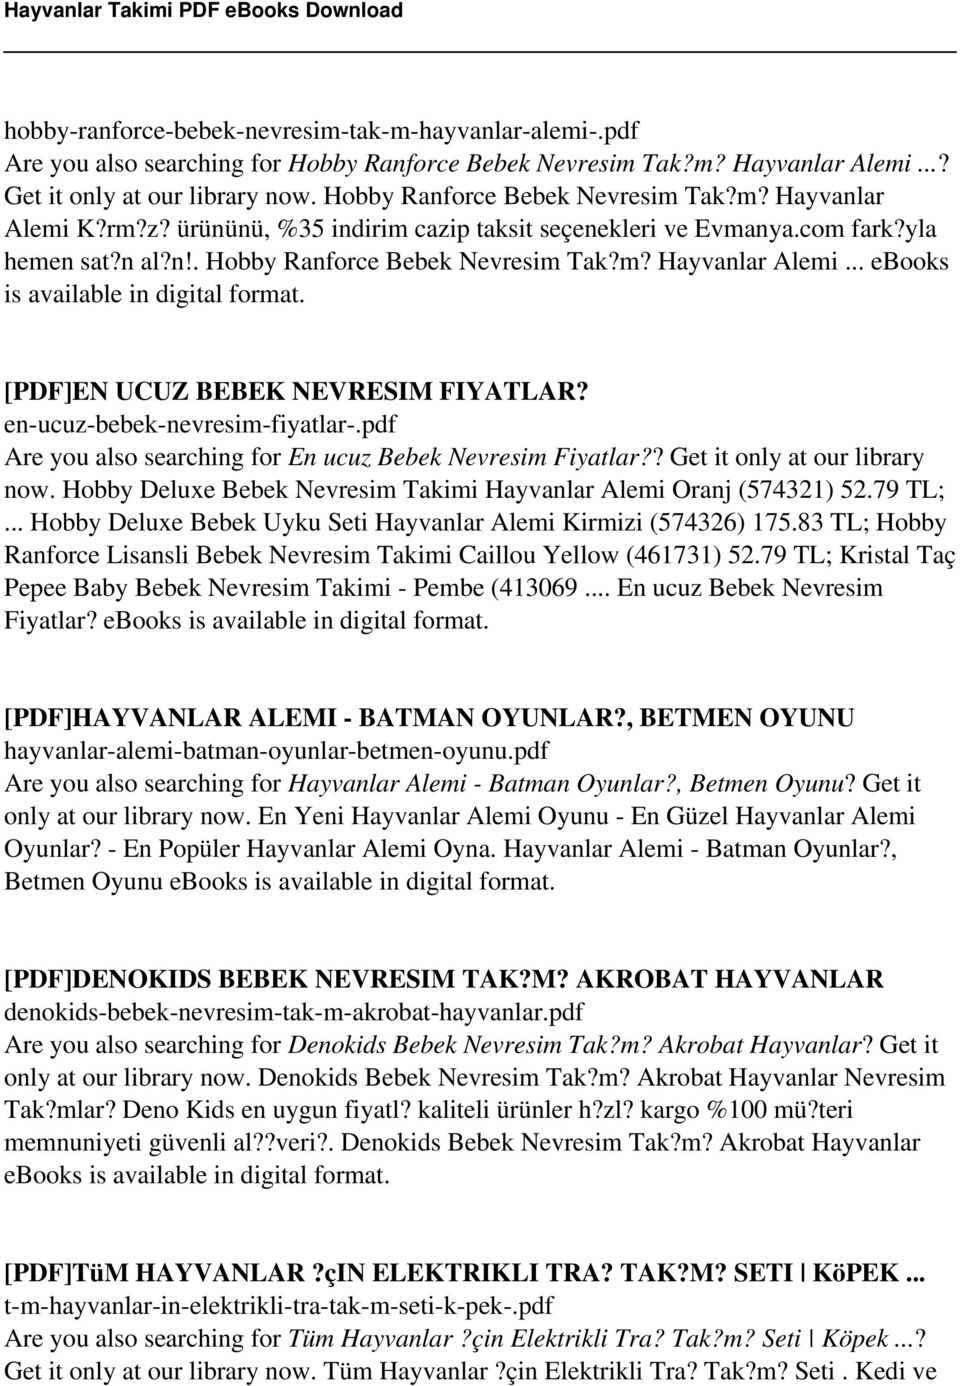 en-ucuz-bebek-nevresim-fiyatlar-.pdf Are you also searching for En ucuz Bebek Nevresim Fiyatlar?? Get it only at our library now. Hobby Deluxe Bebek Nevresim Takimi Hayvanlar Alemi Oranj (574321) 52.